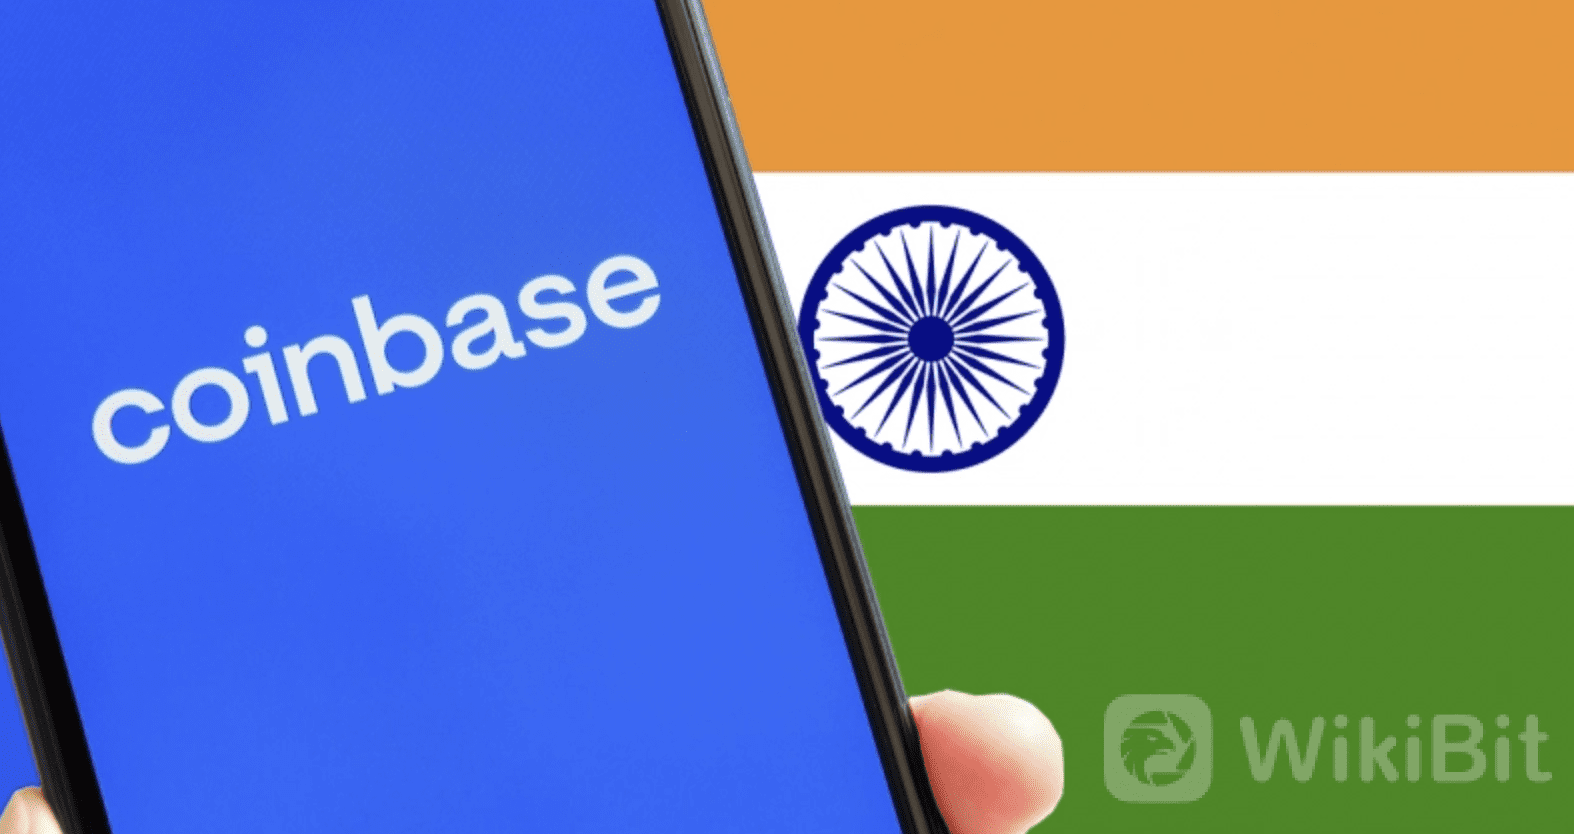 印度央行宣布暂停Coinbase服务